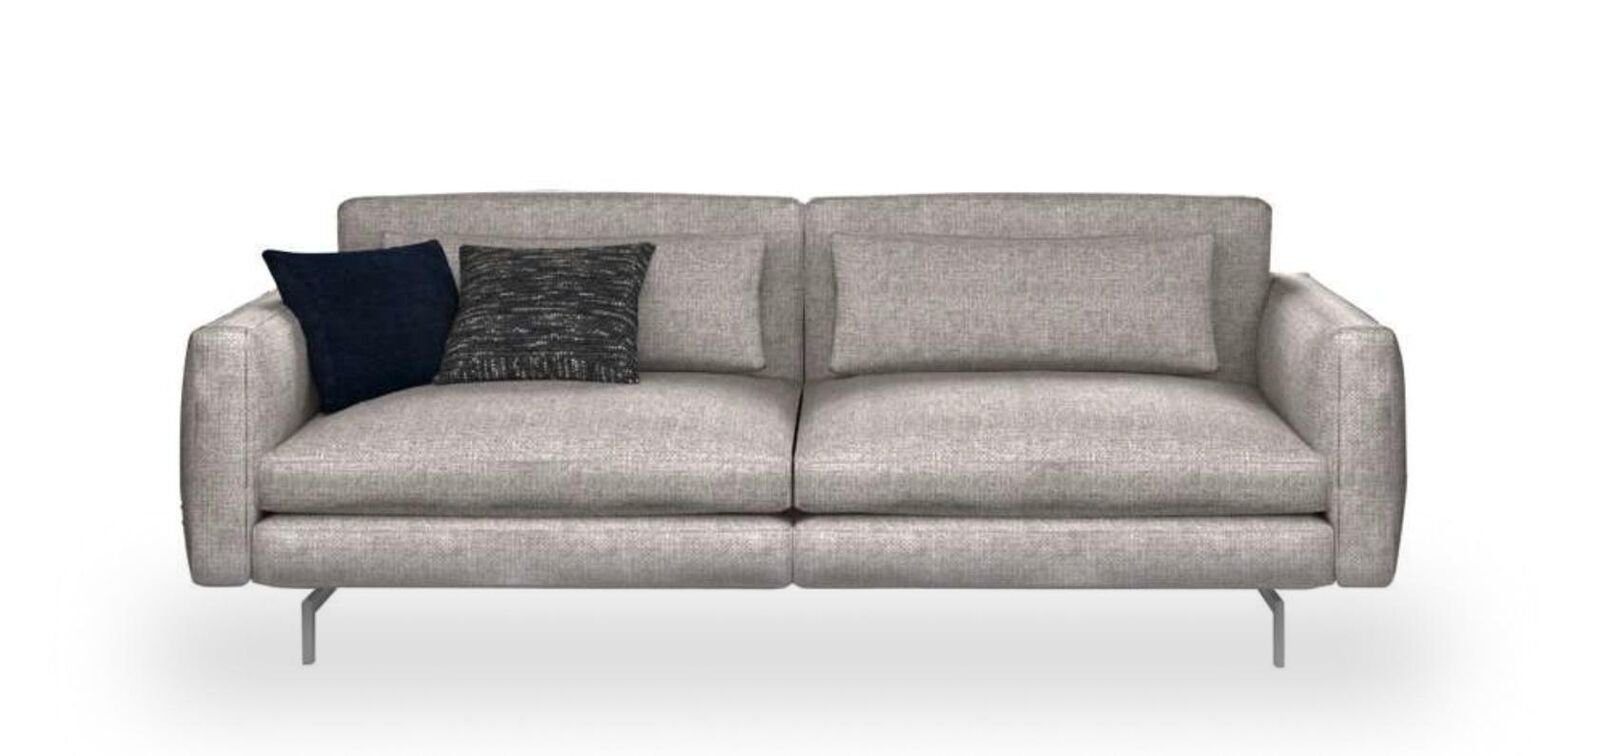 JVmoebel Sofa Dreisitzer Couch Moderne Textil Sofas, 1 Teile, in Wohnzimmermöbel Made Europa